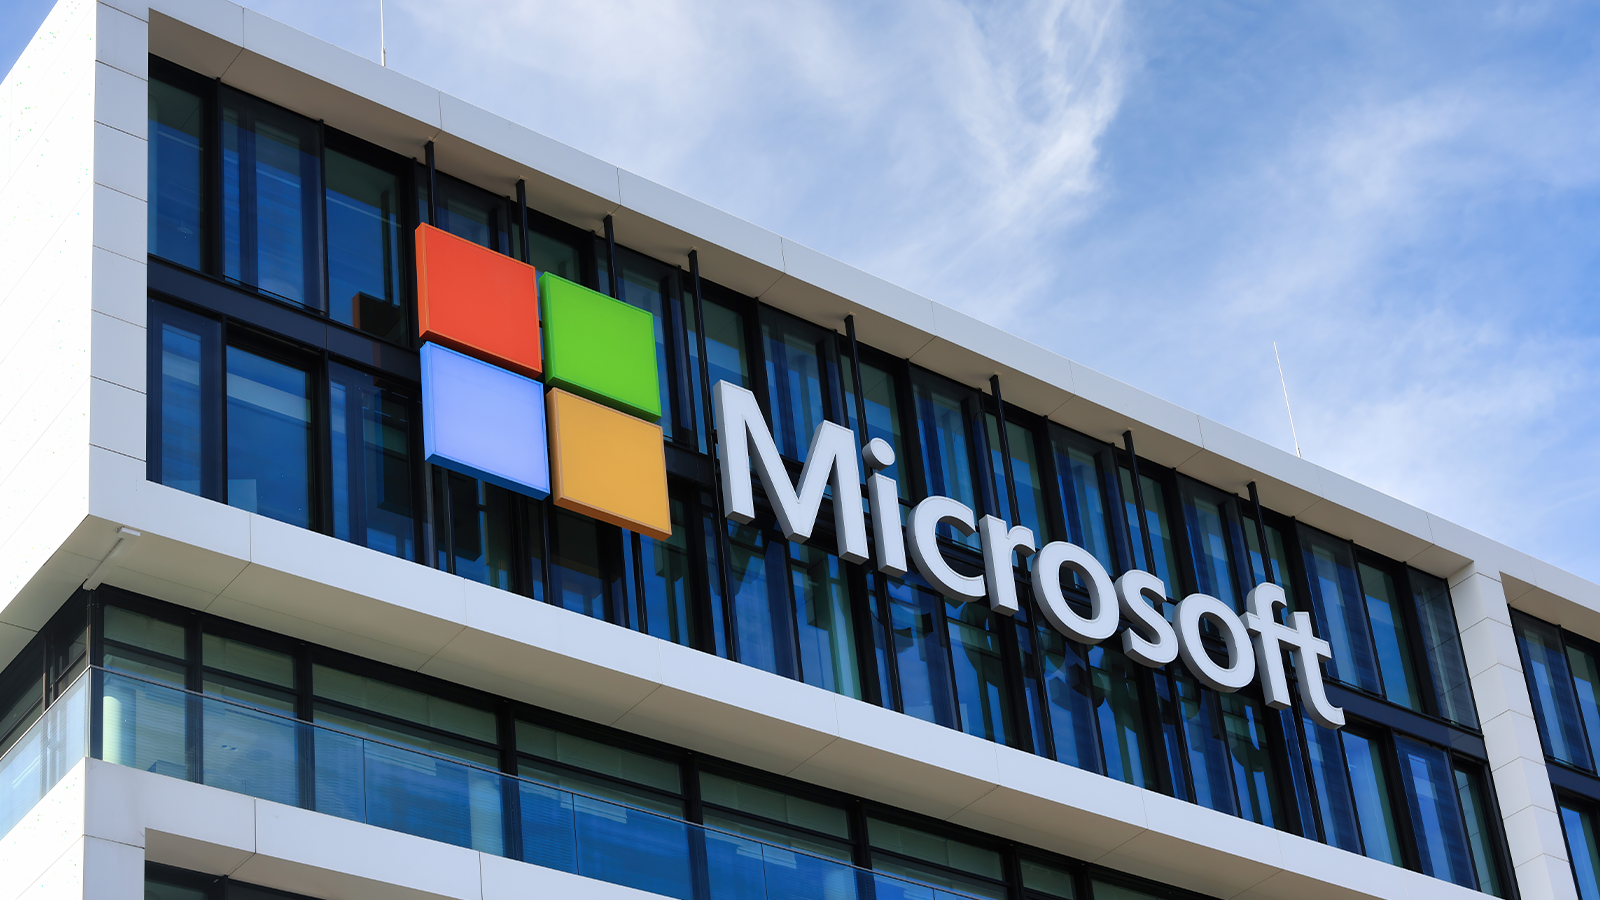 Microsoft investiert Milliarden in KI in Deutschland